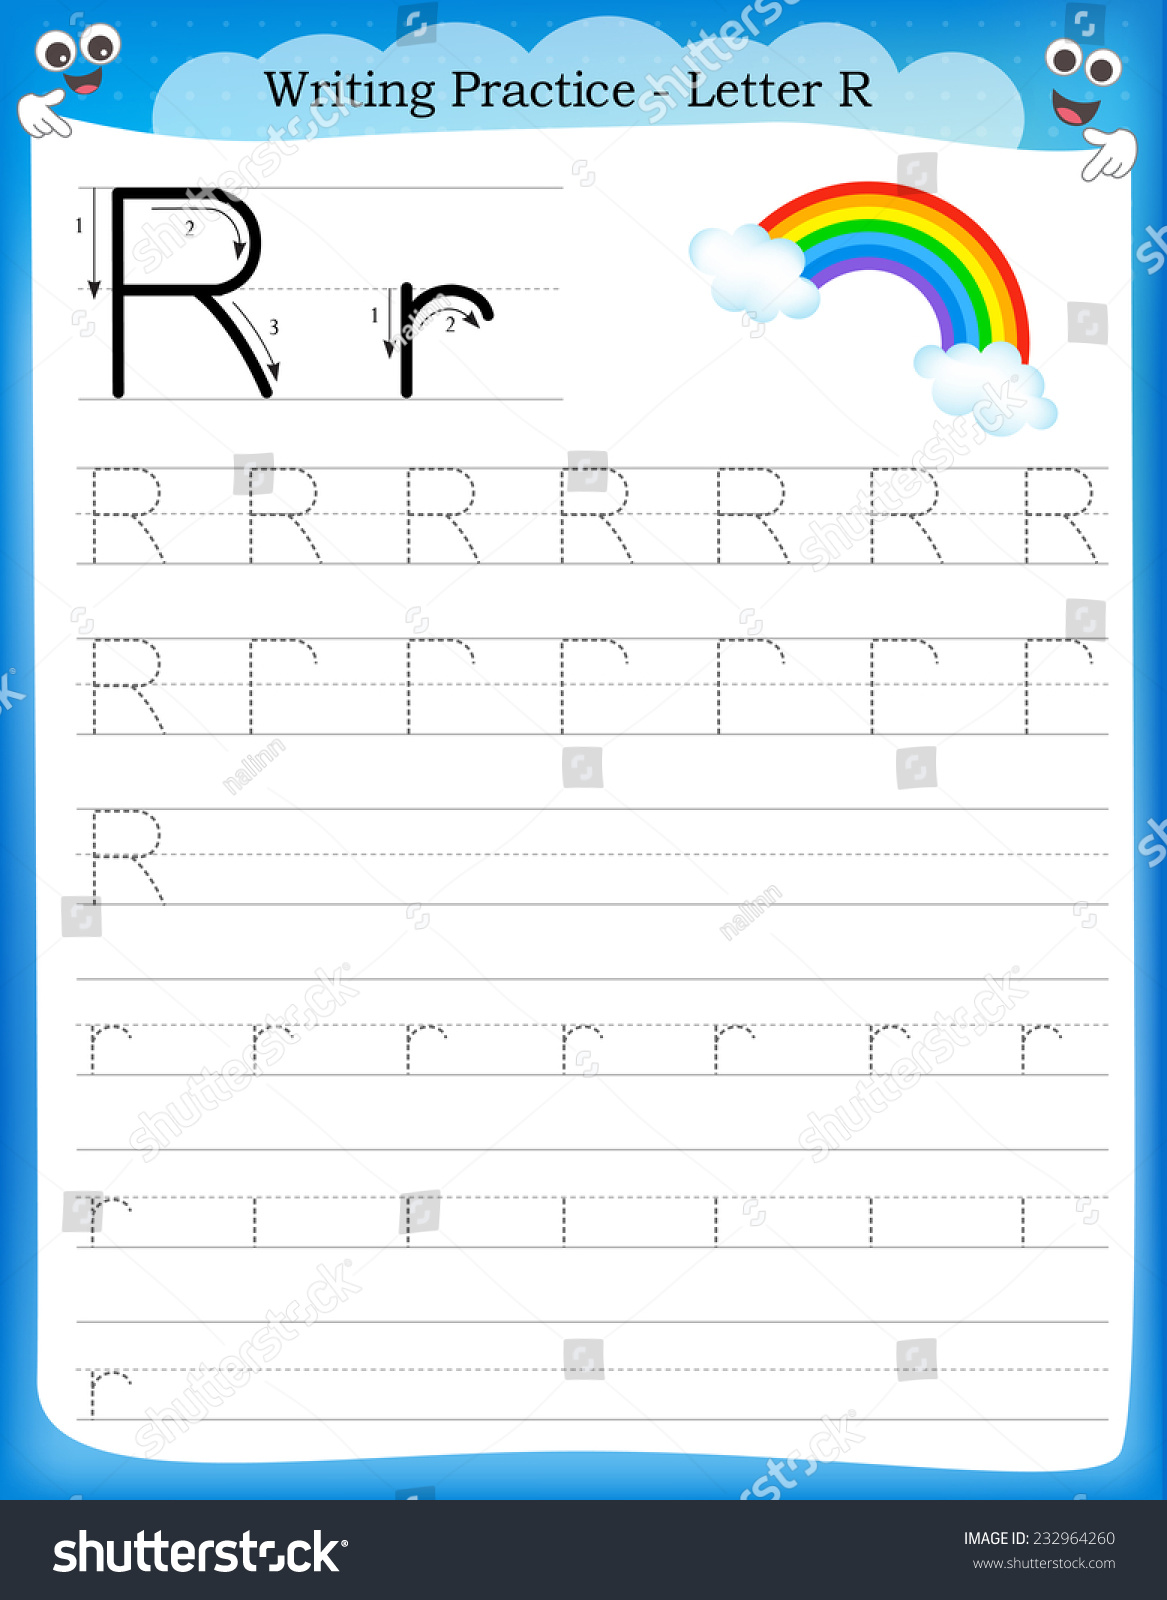 letter-r-worksheets-for-preschoolers-online-splashlearn-letter-r-worksheets-by-kindergarten